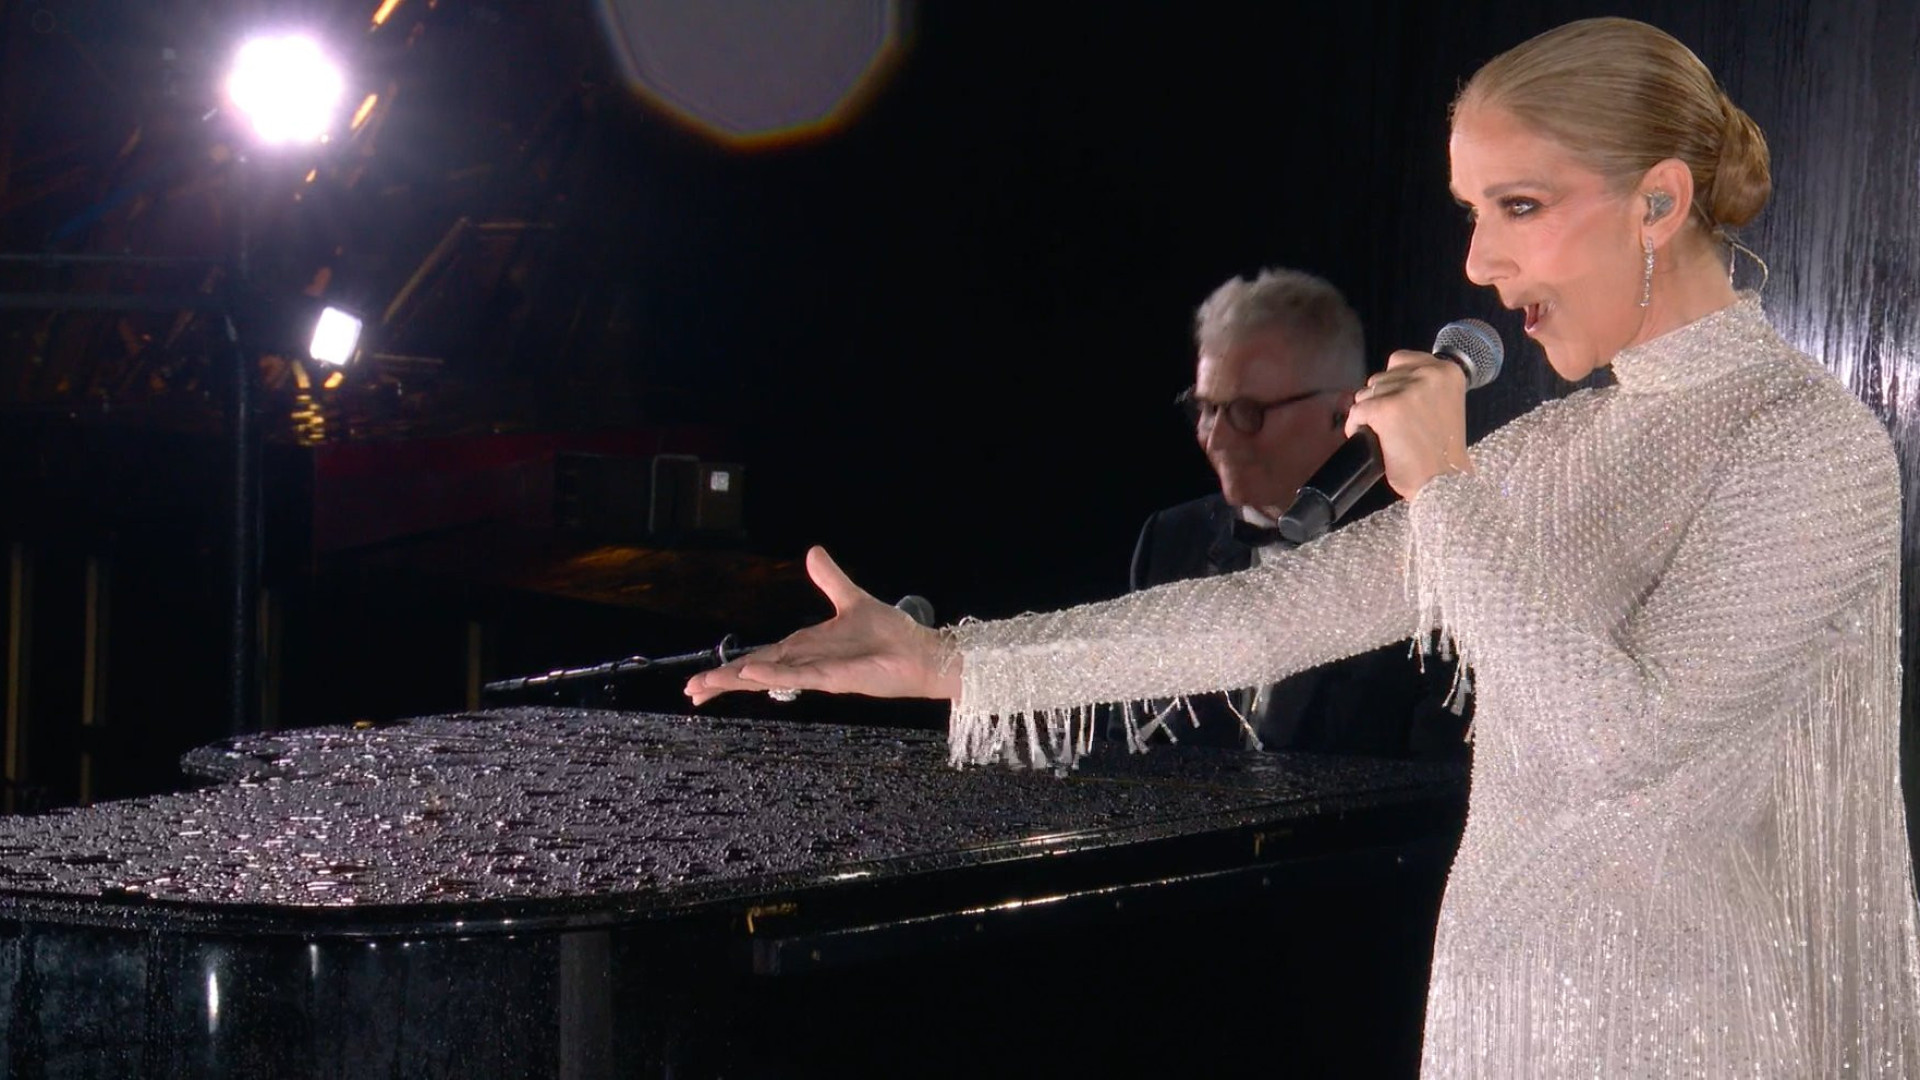 Eis o vídeo da poderosa e surpreendente atuação de Céline Dion nos JO